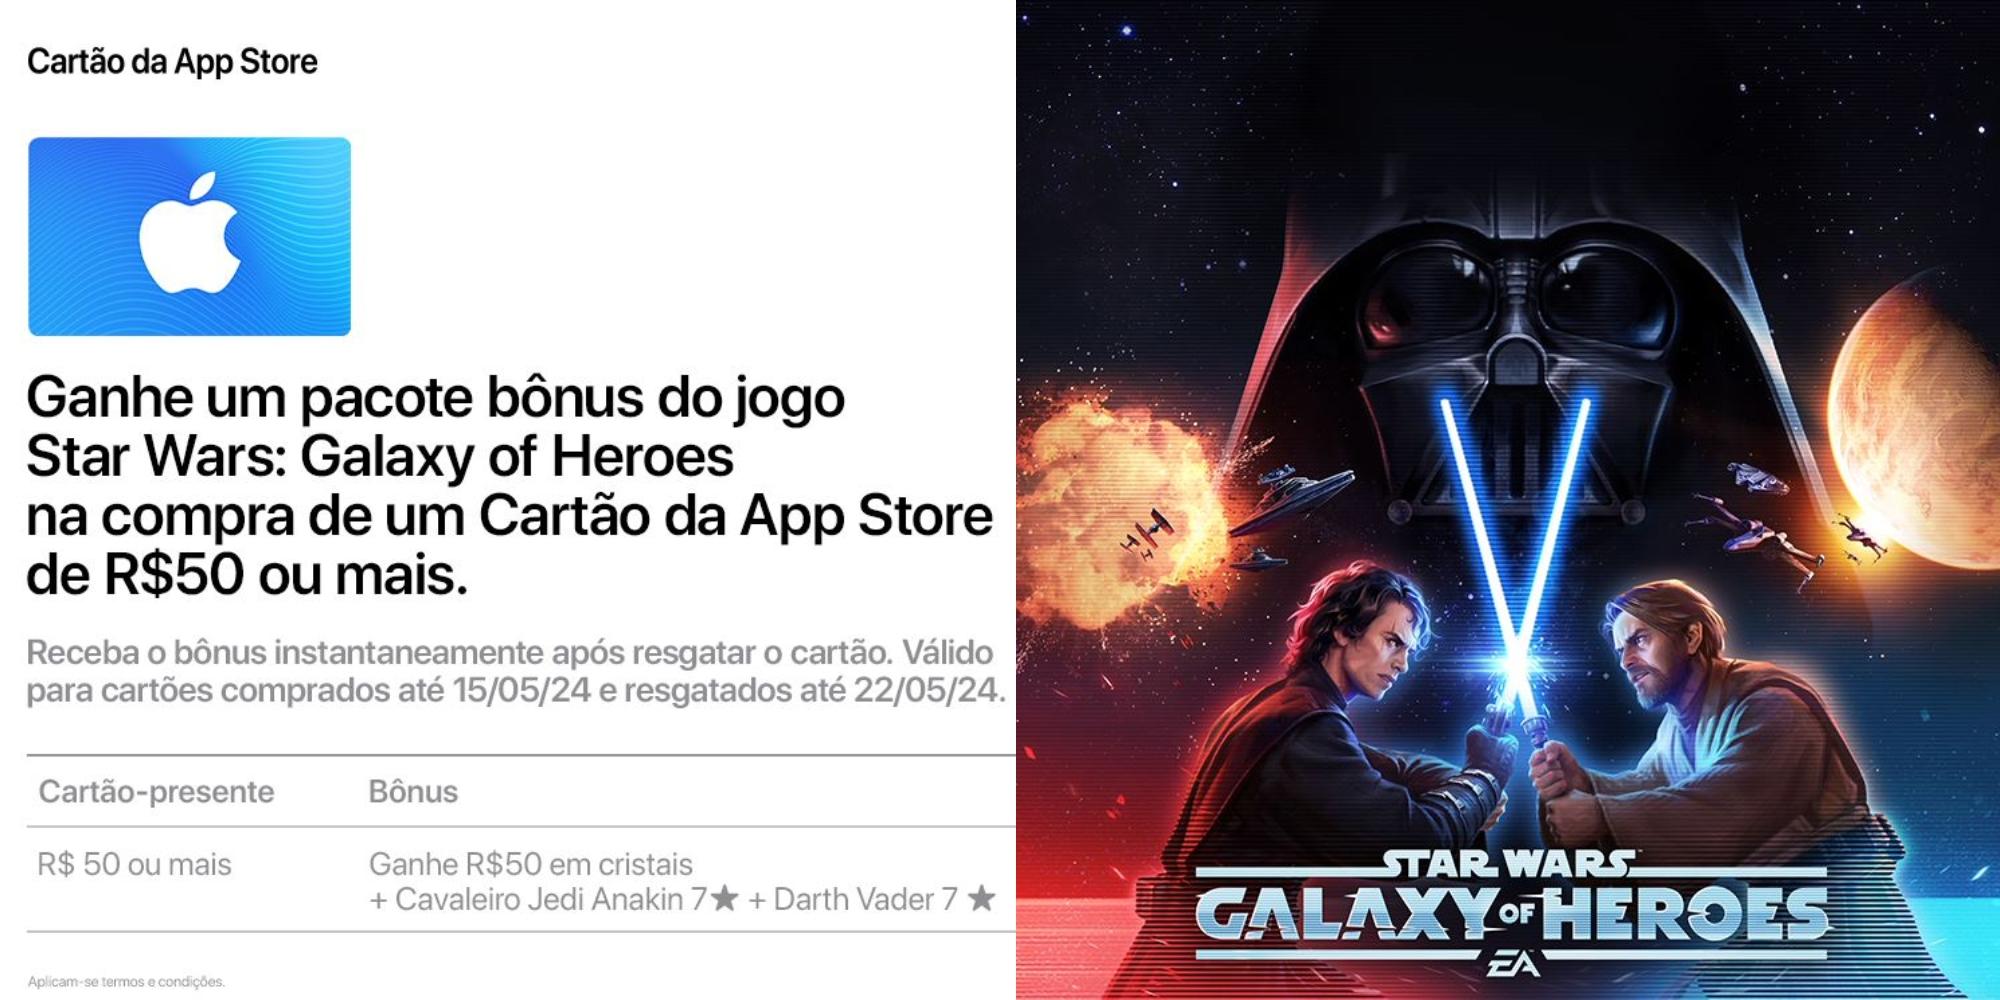 Cover Image for Promoção Star Wars: Galaxy of Heroes e Cartão da App Store